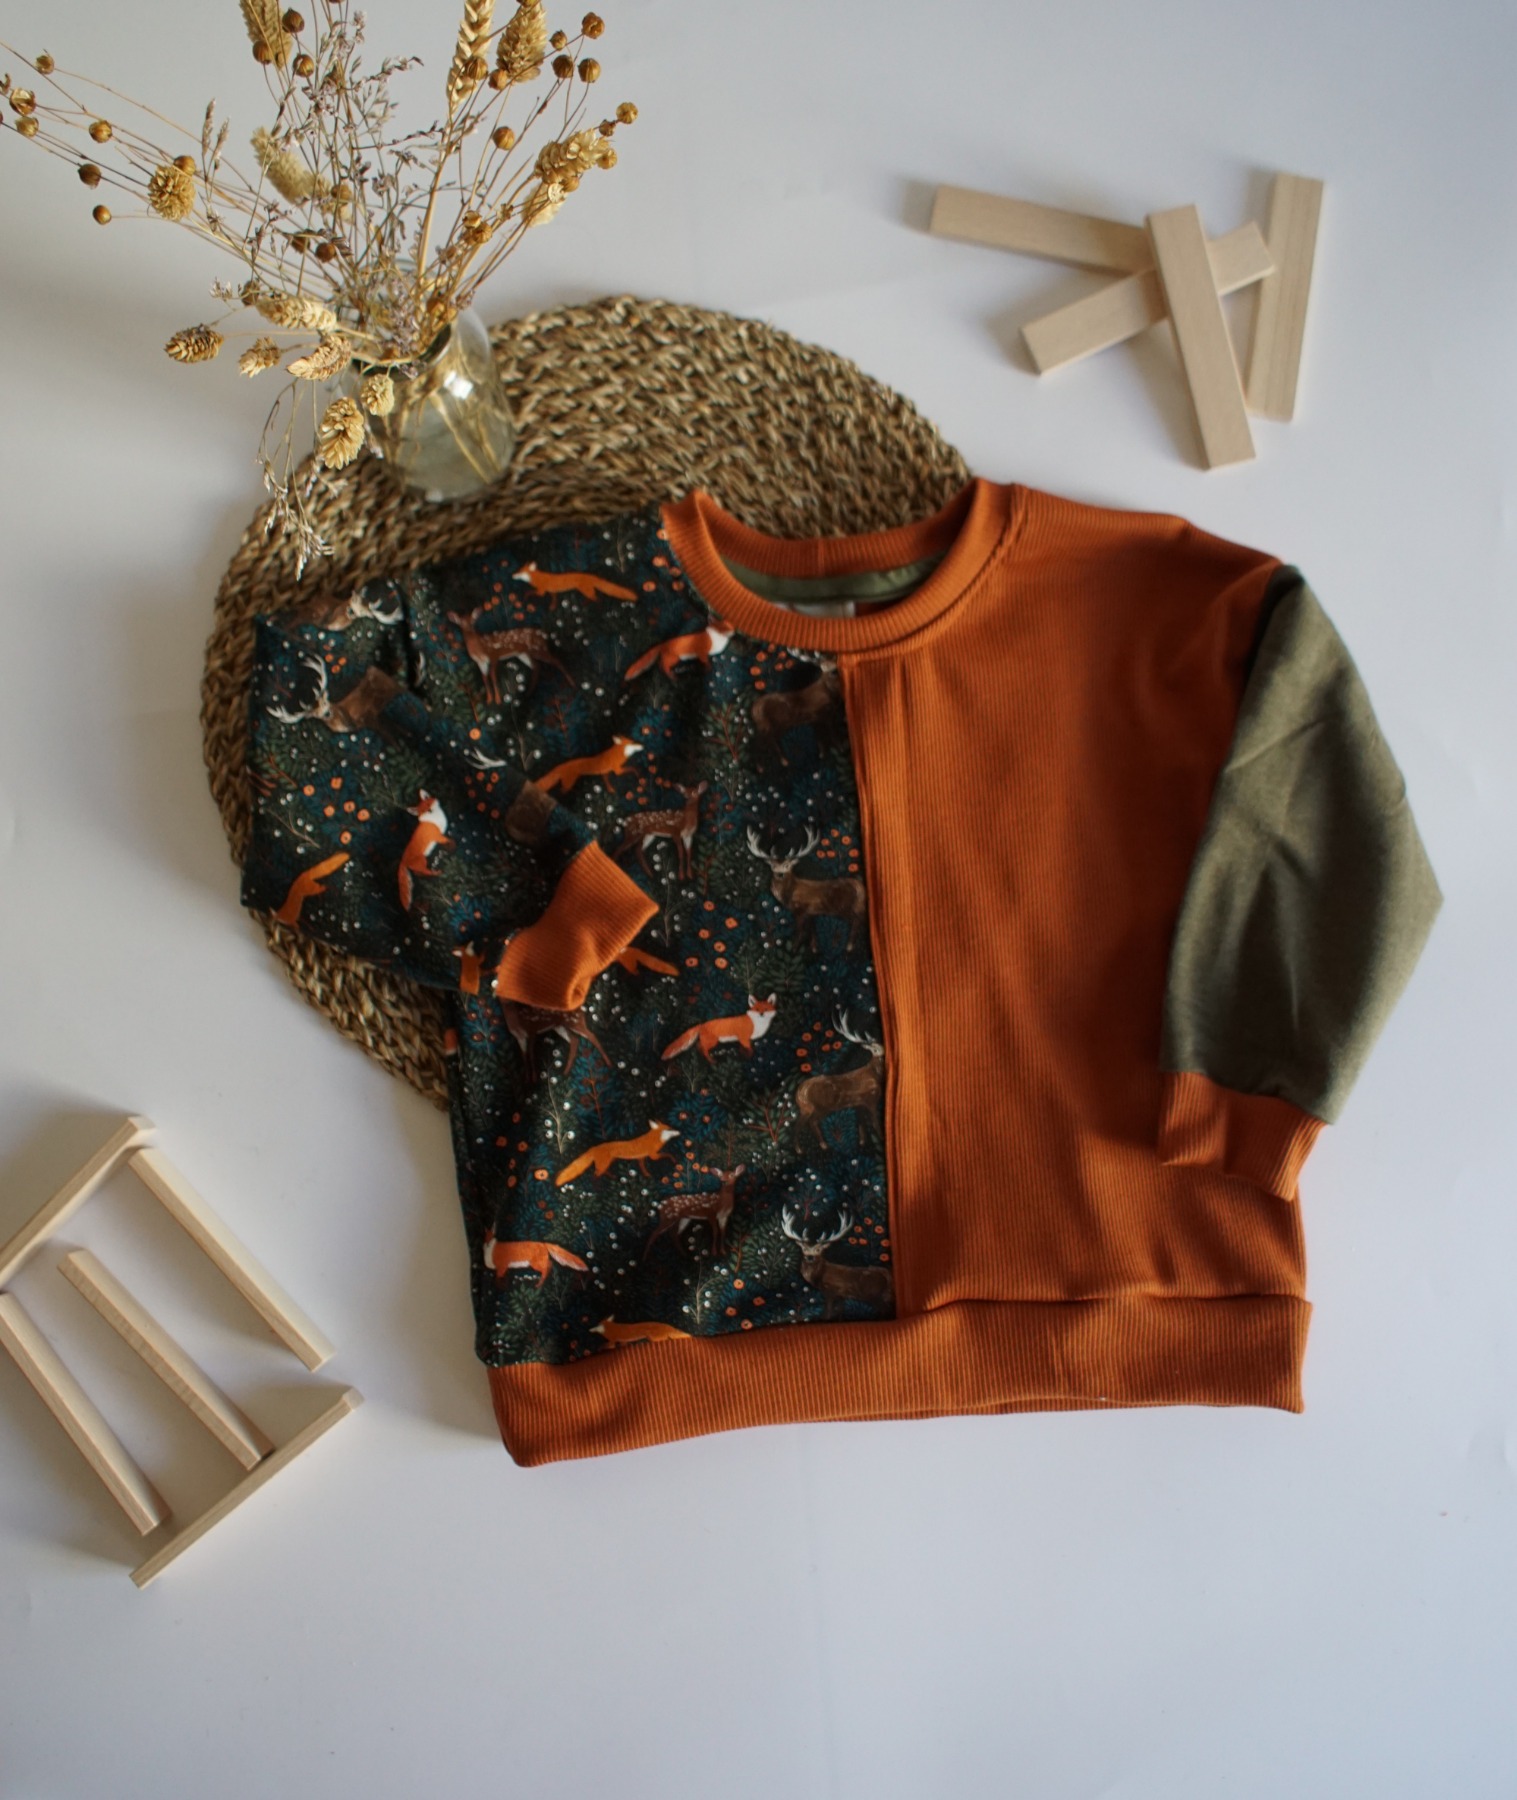 Kauf auf Bestellung Handmade Oversized Sweater mit Waldtieren Gr. 56-140 von kate.m Design